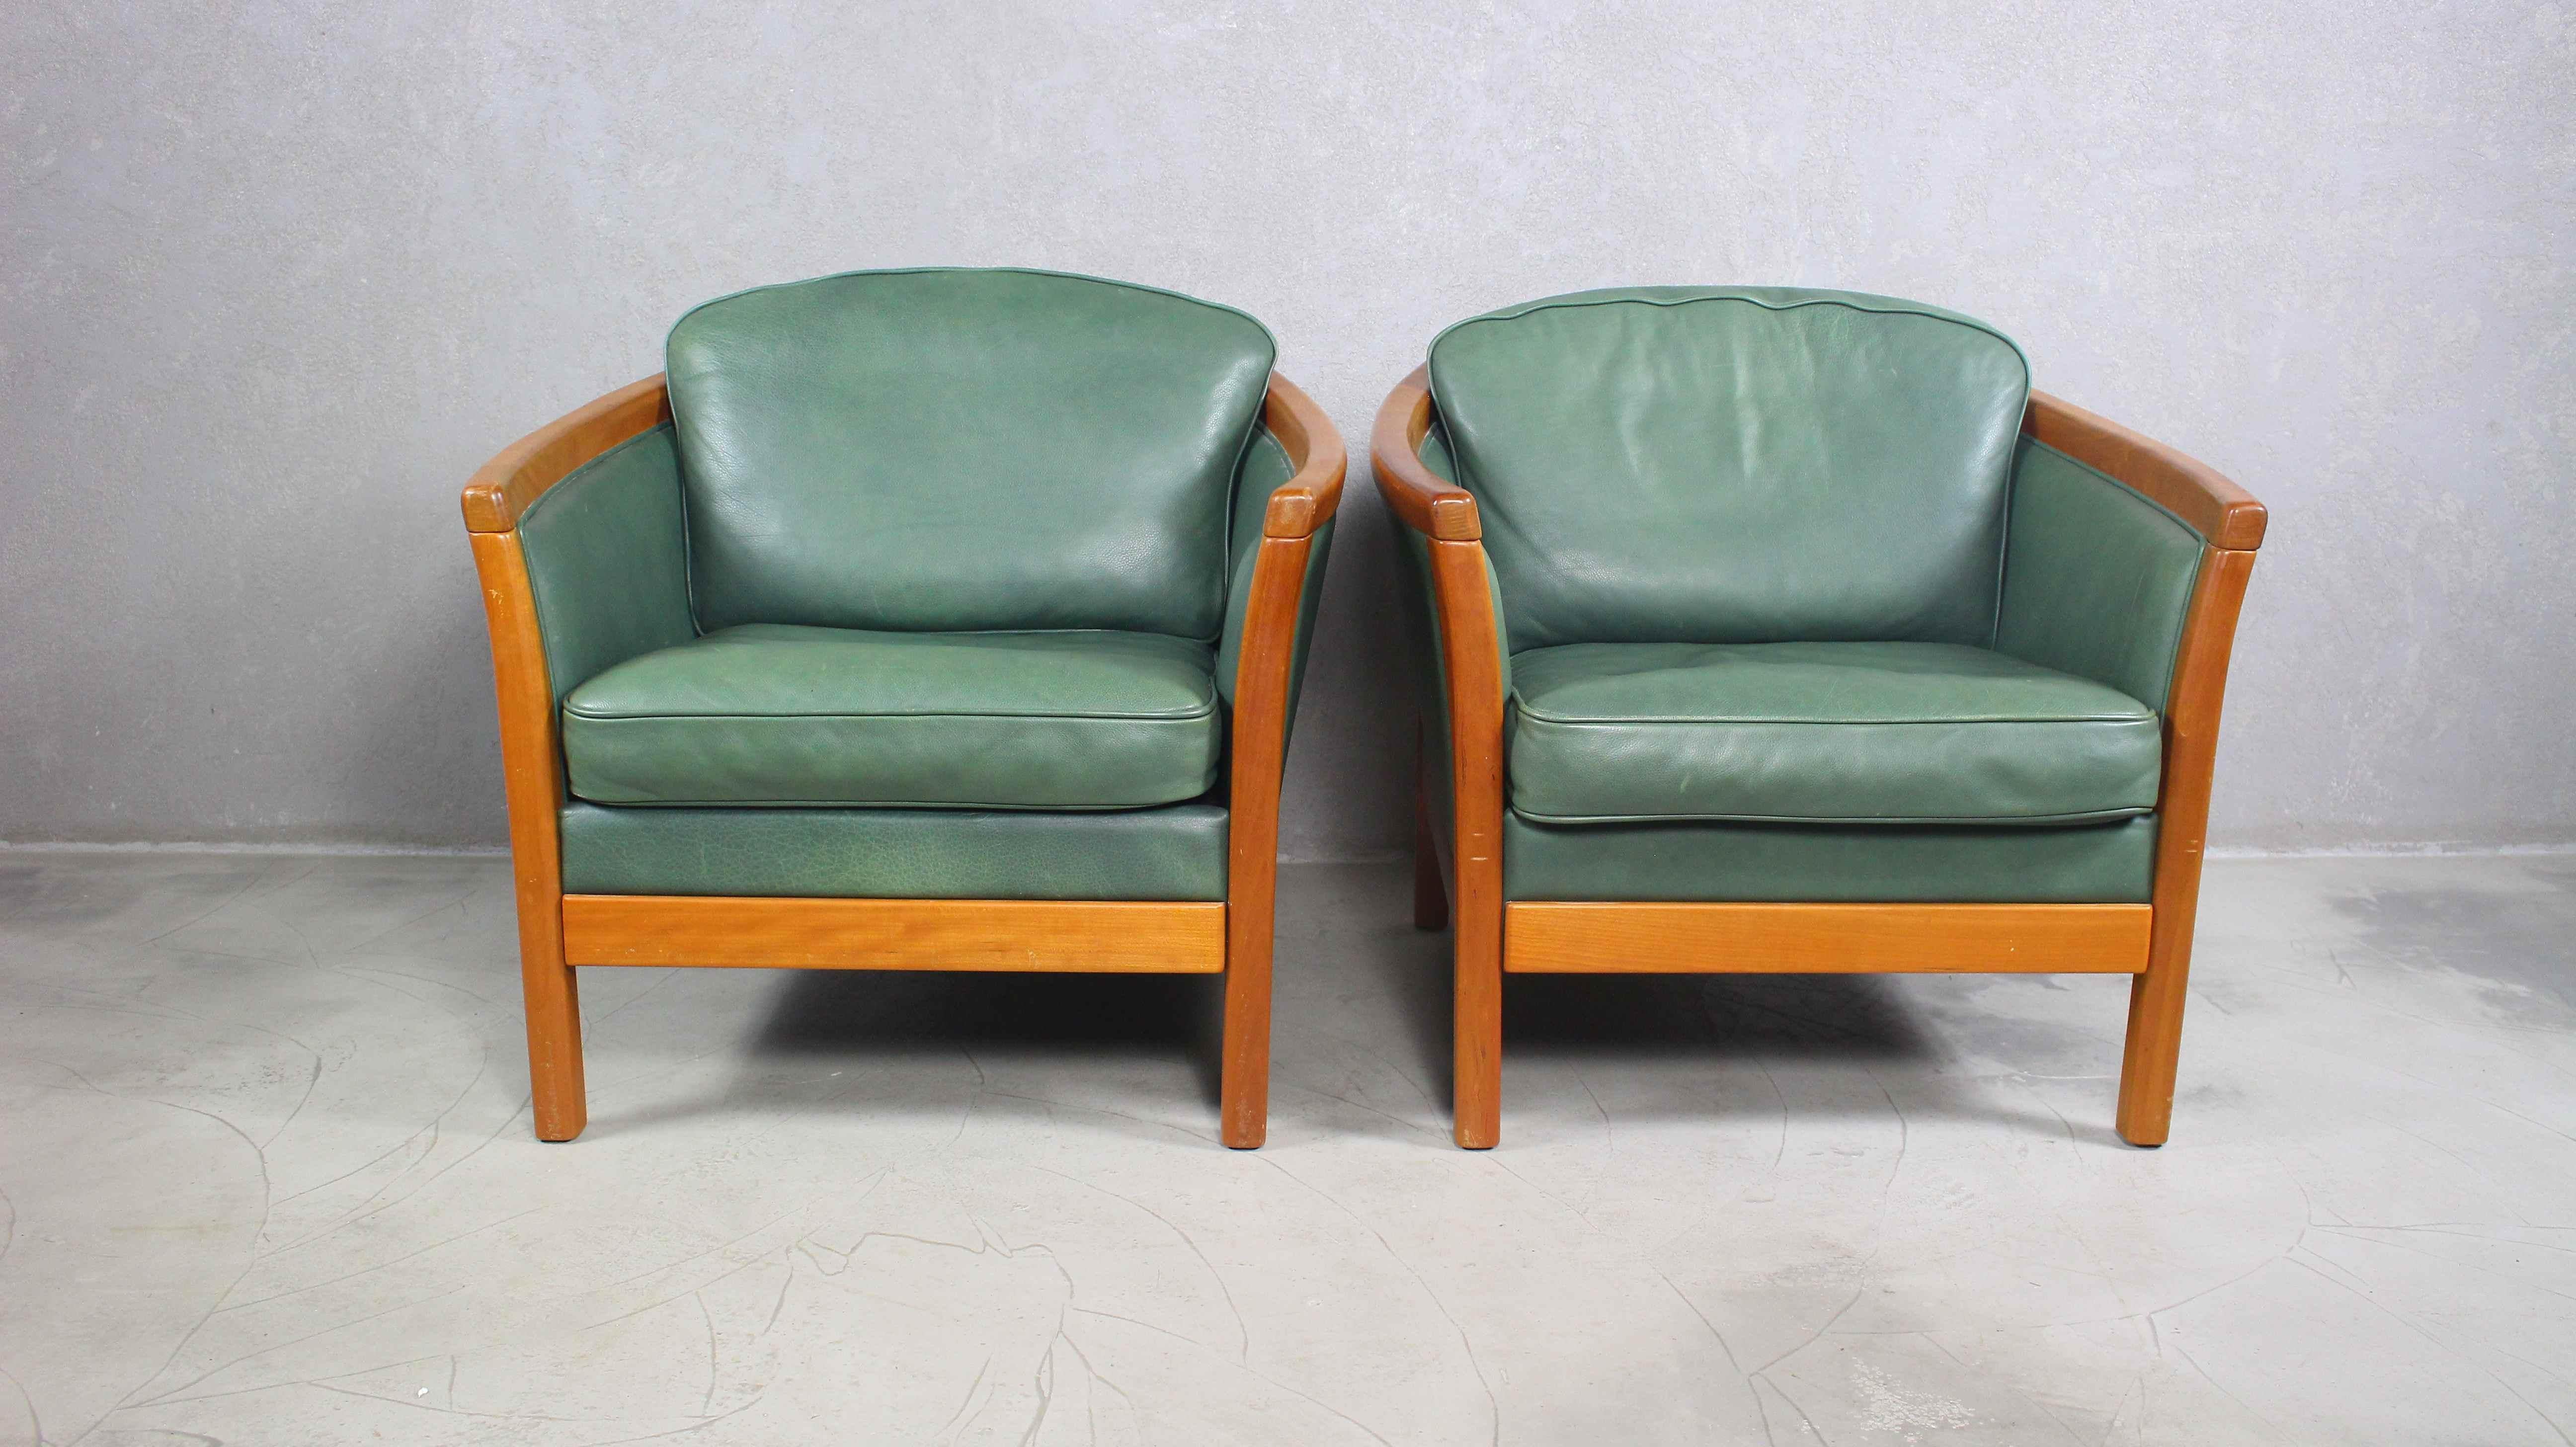 Paire de chaises en cuir vert vintage.
Design Mogens Hansen.
Produit au Danemark dans les années 1980/90.
Fabriqué en bois de cerisier massif et en cuir naturel de haute qualité de couleur vert bouteille.